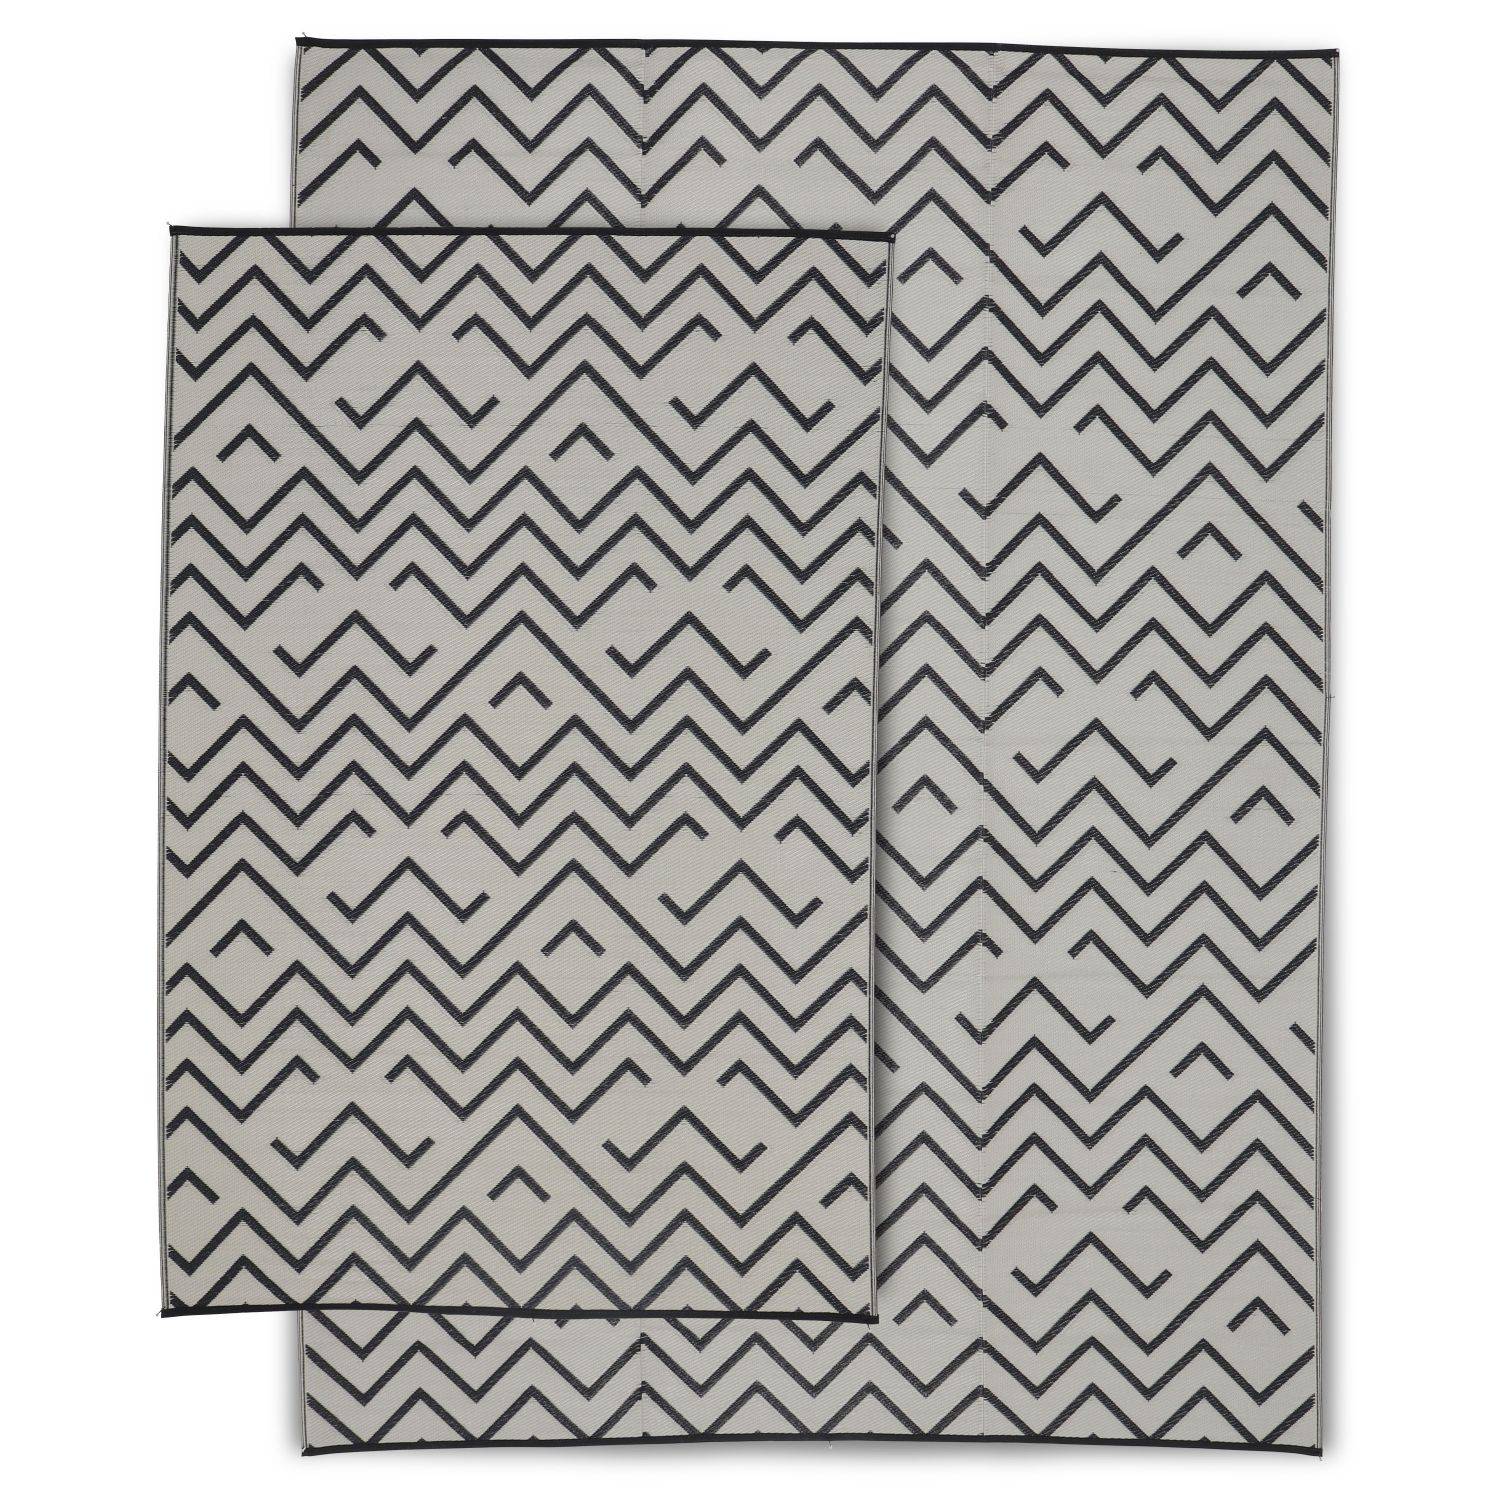 Tapis d’extérieur 270x360cm Sydney - Rectangulaire, motif vagues noir / beige, jacquard, réversible, indoor / outdoor Photo5